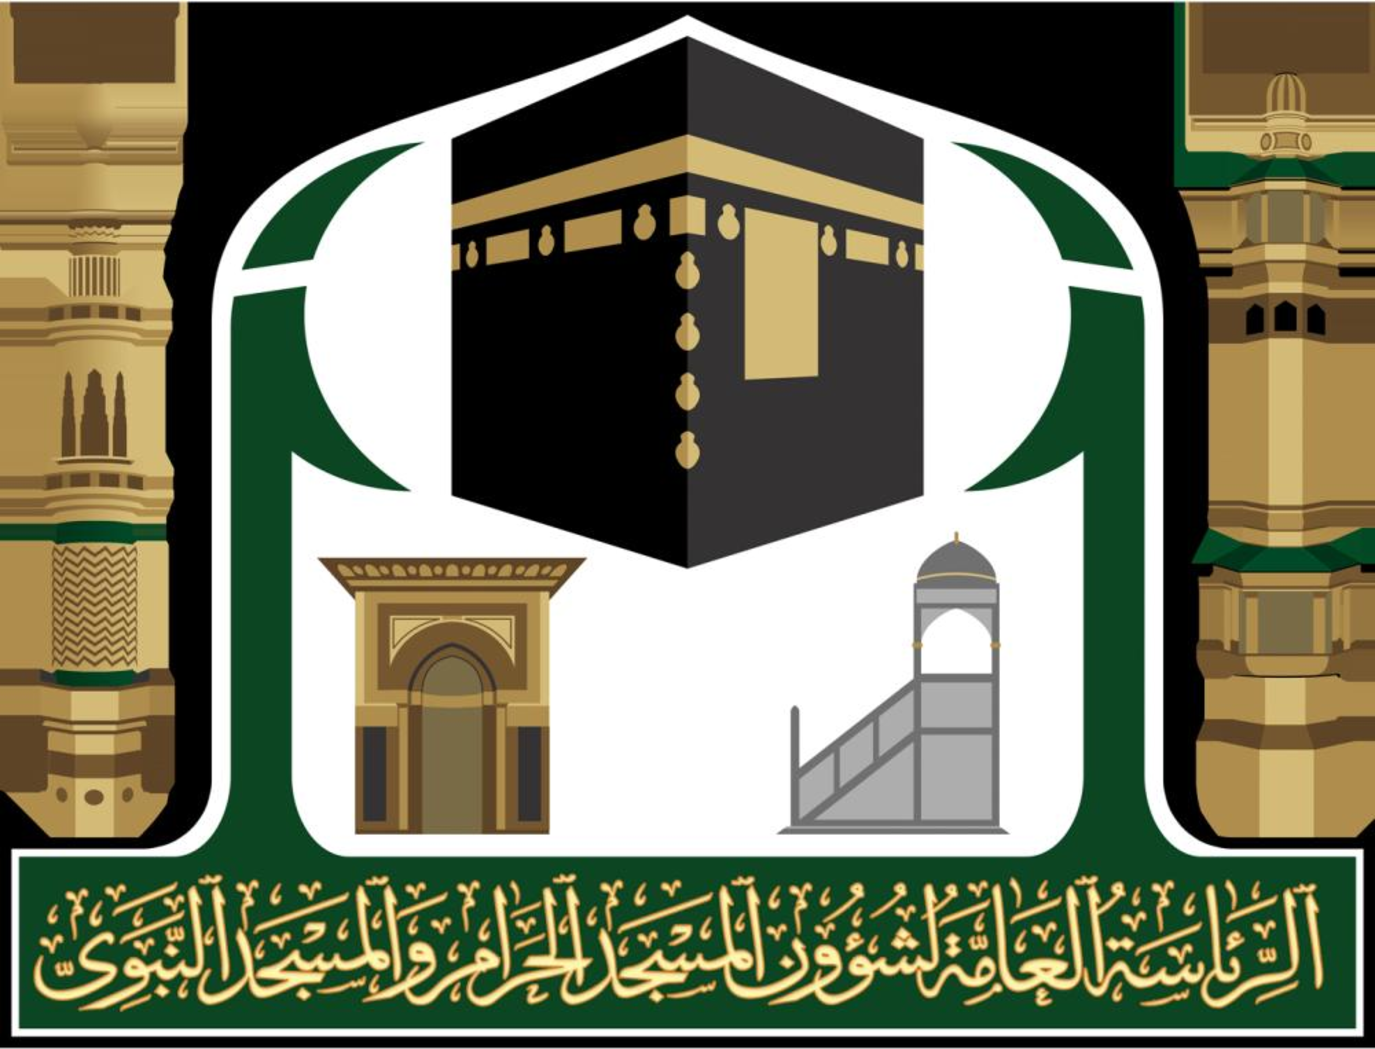 والمسجد لشؤون النبوي العامة الرئاسة المسجد الحرام الرئاسة العامة